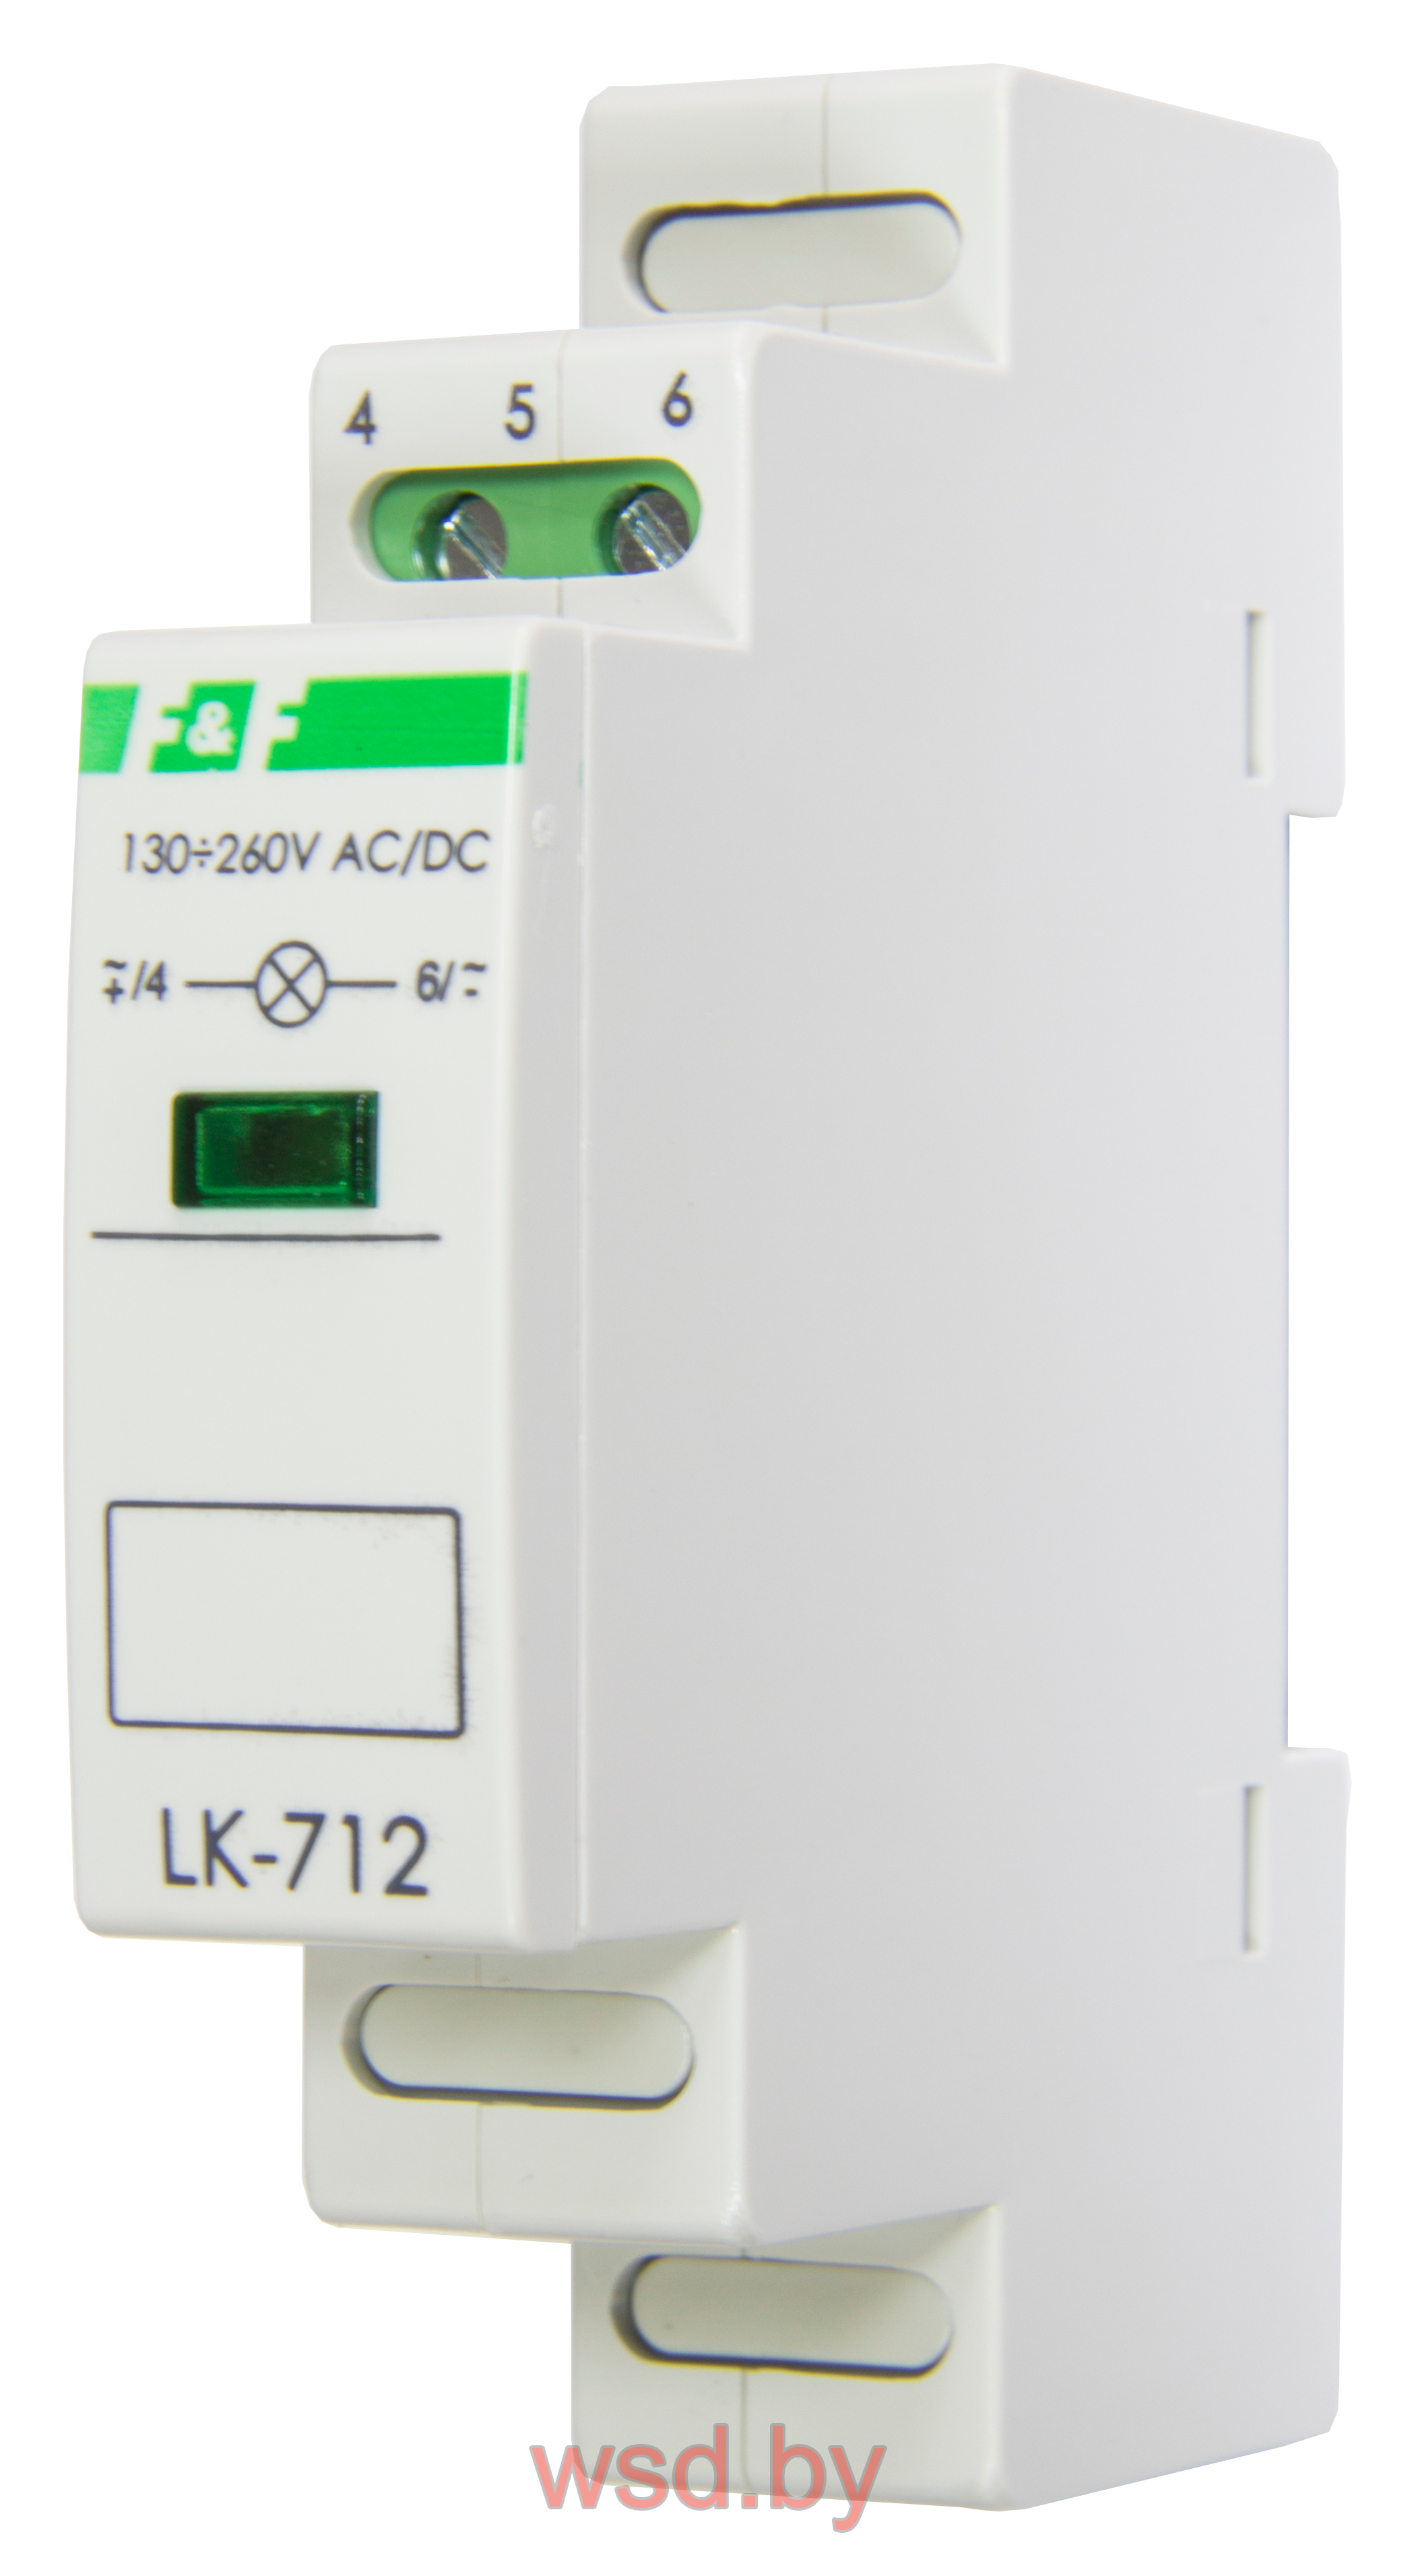 Указатель напряжения LK-712-G-1  сигнализация наличия одной фазы, цвет ЗЕЛЁНЫЙ,  1 модуль, монтаж на DIN-рейке 5-10 В AC/DC IP20